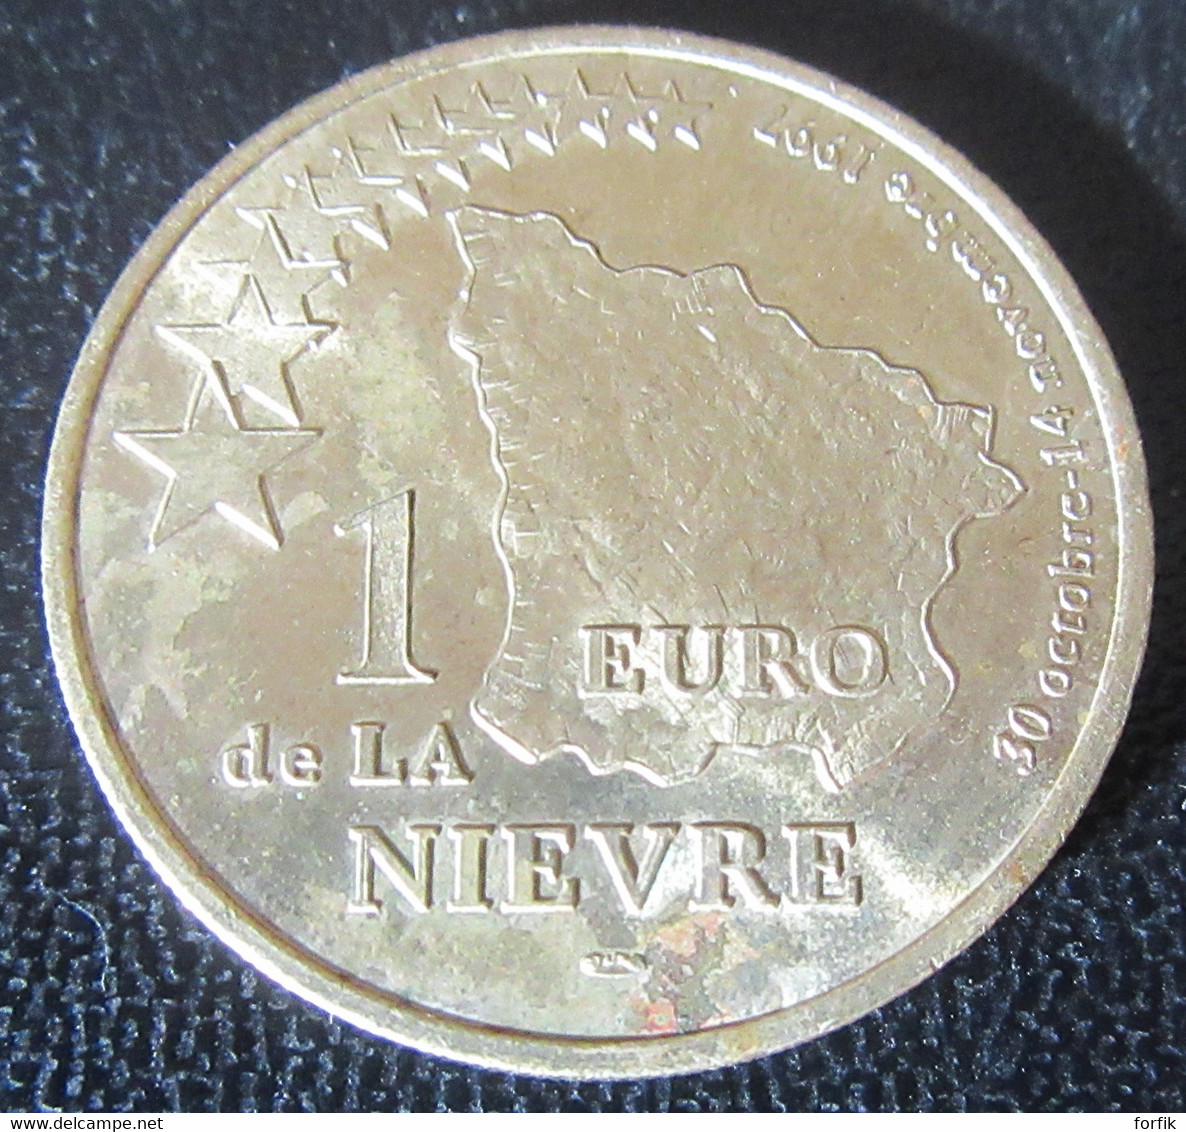 France - Jeton / Médaille 1 Euro De La Nièvre 1997 - Euros Of The Cities